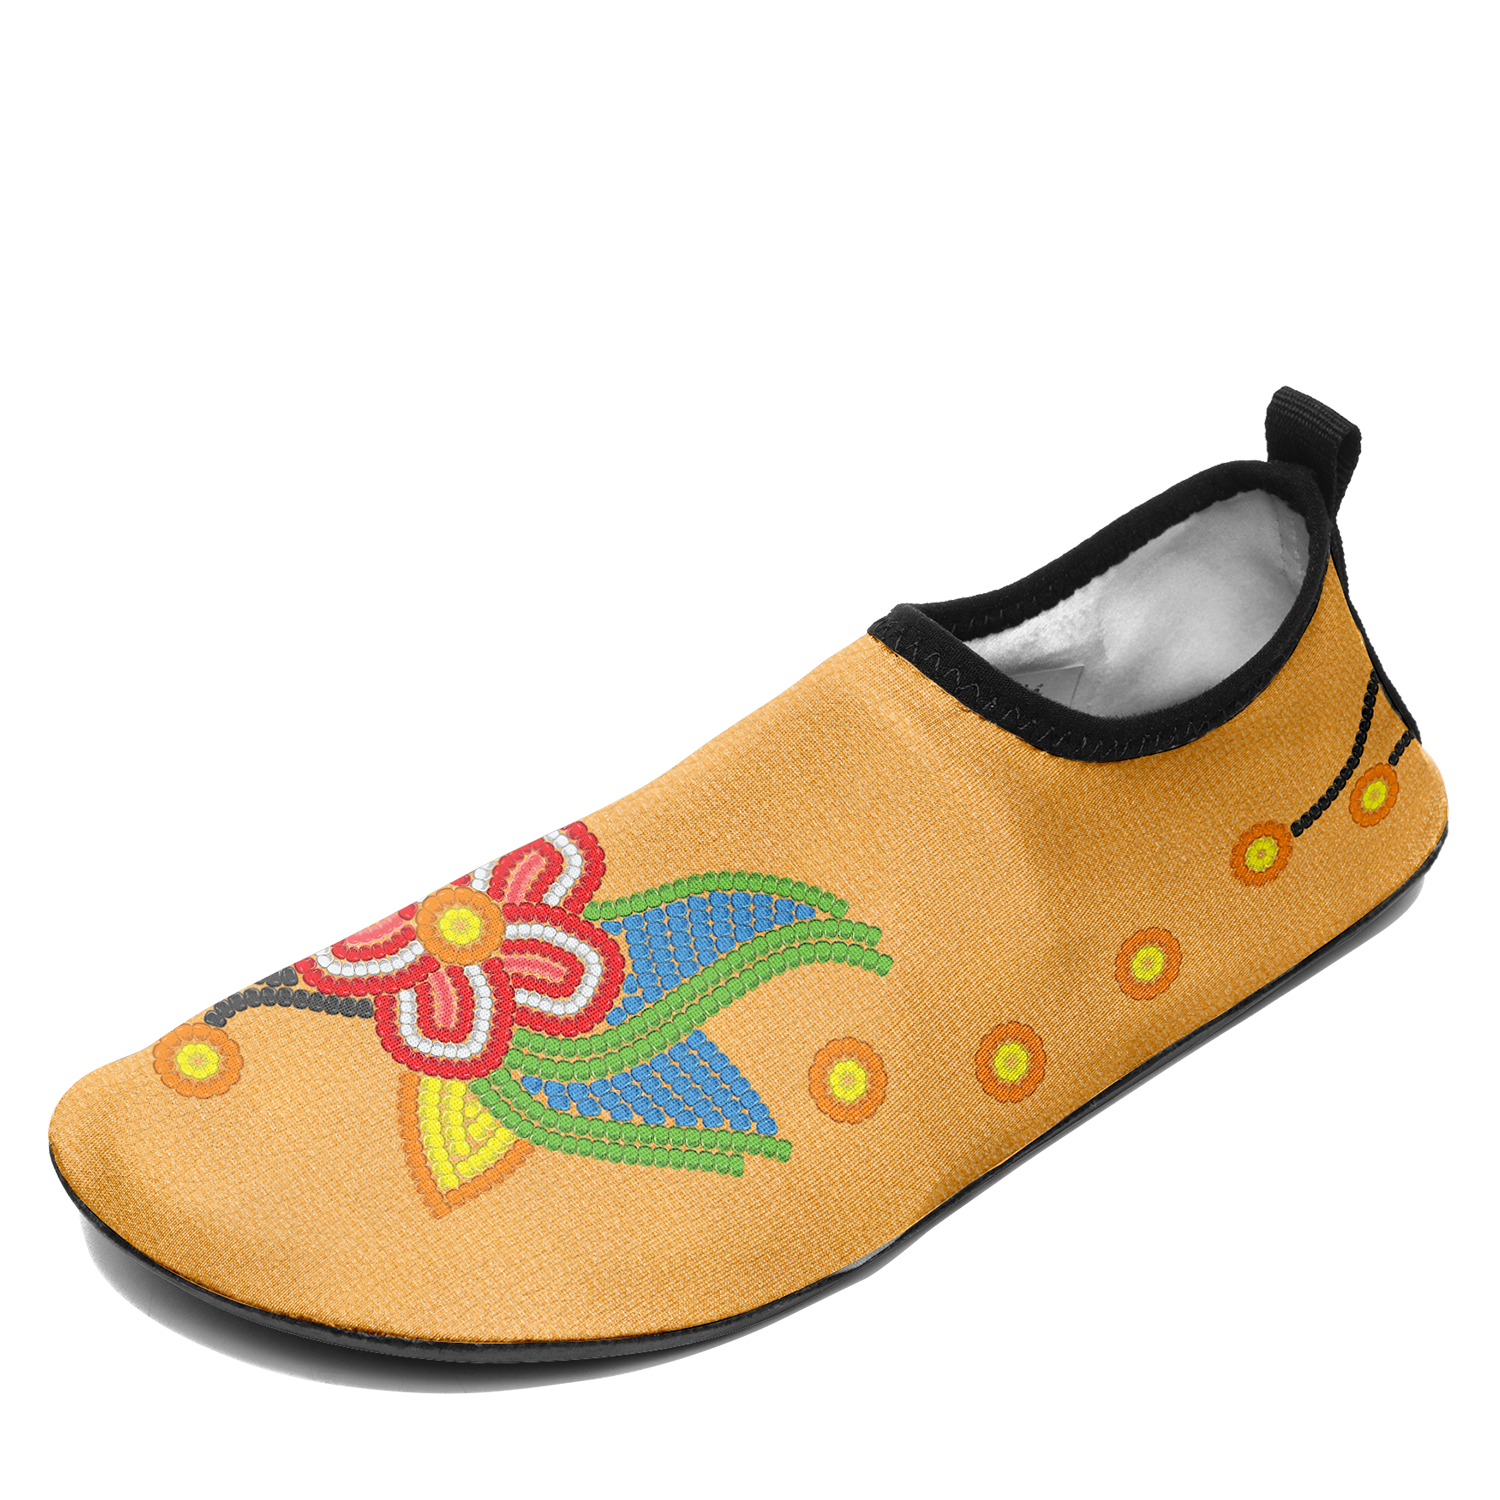 Desert Dream 3 Kid's Sockamoccs Slip On Shoes